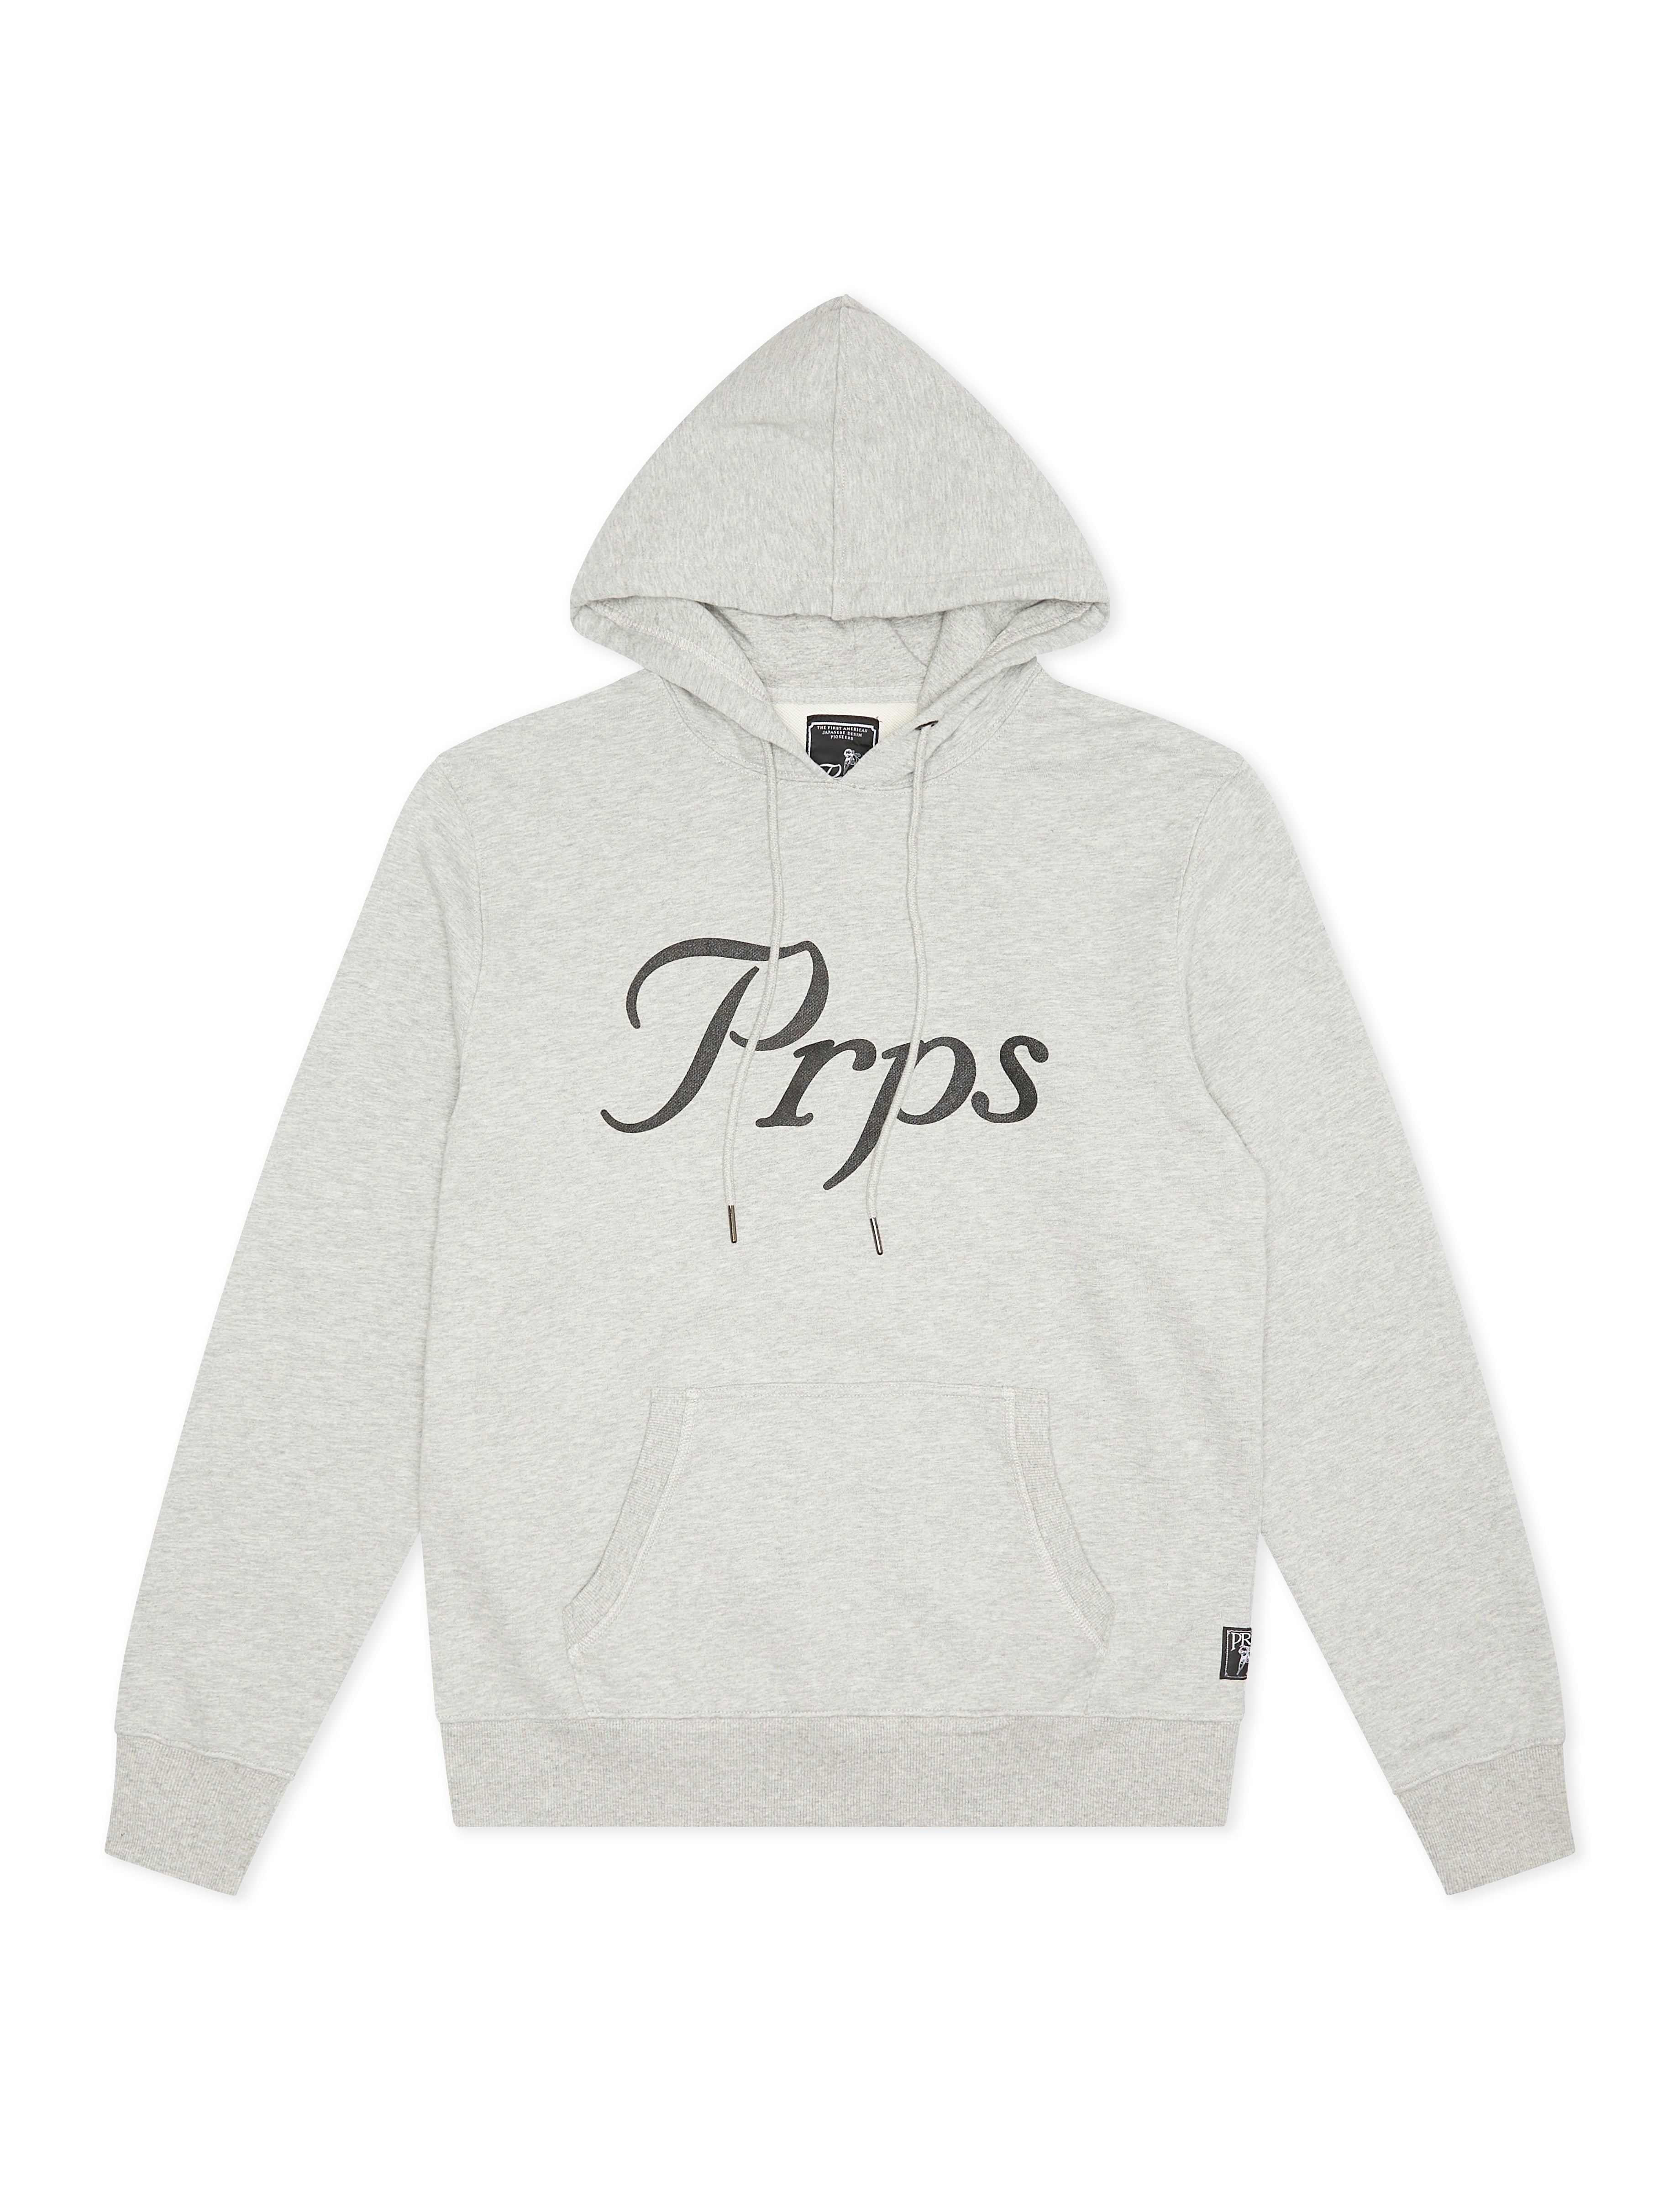 PRPS Reflective Zip-Up Hoodie